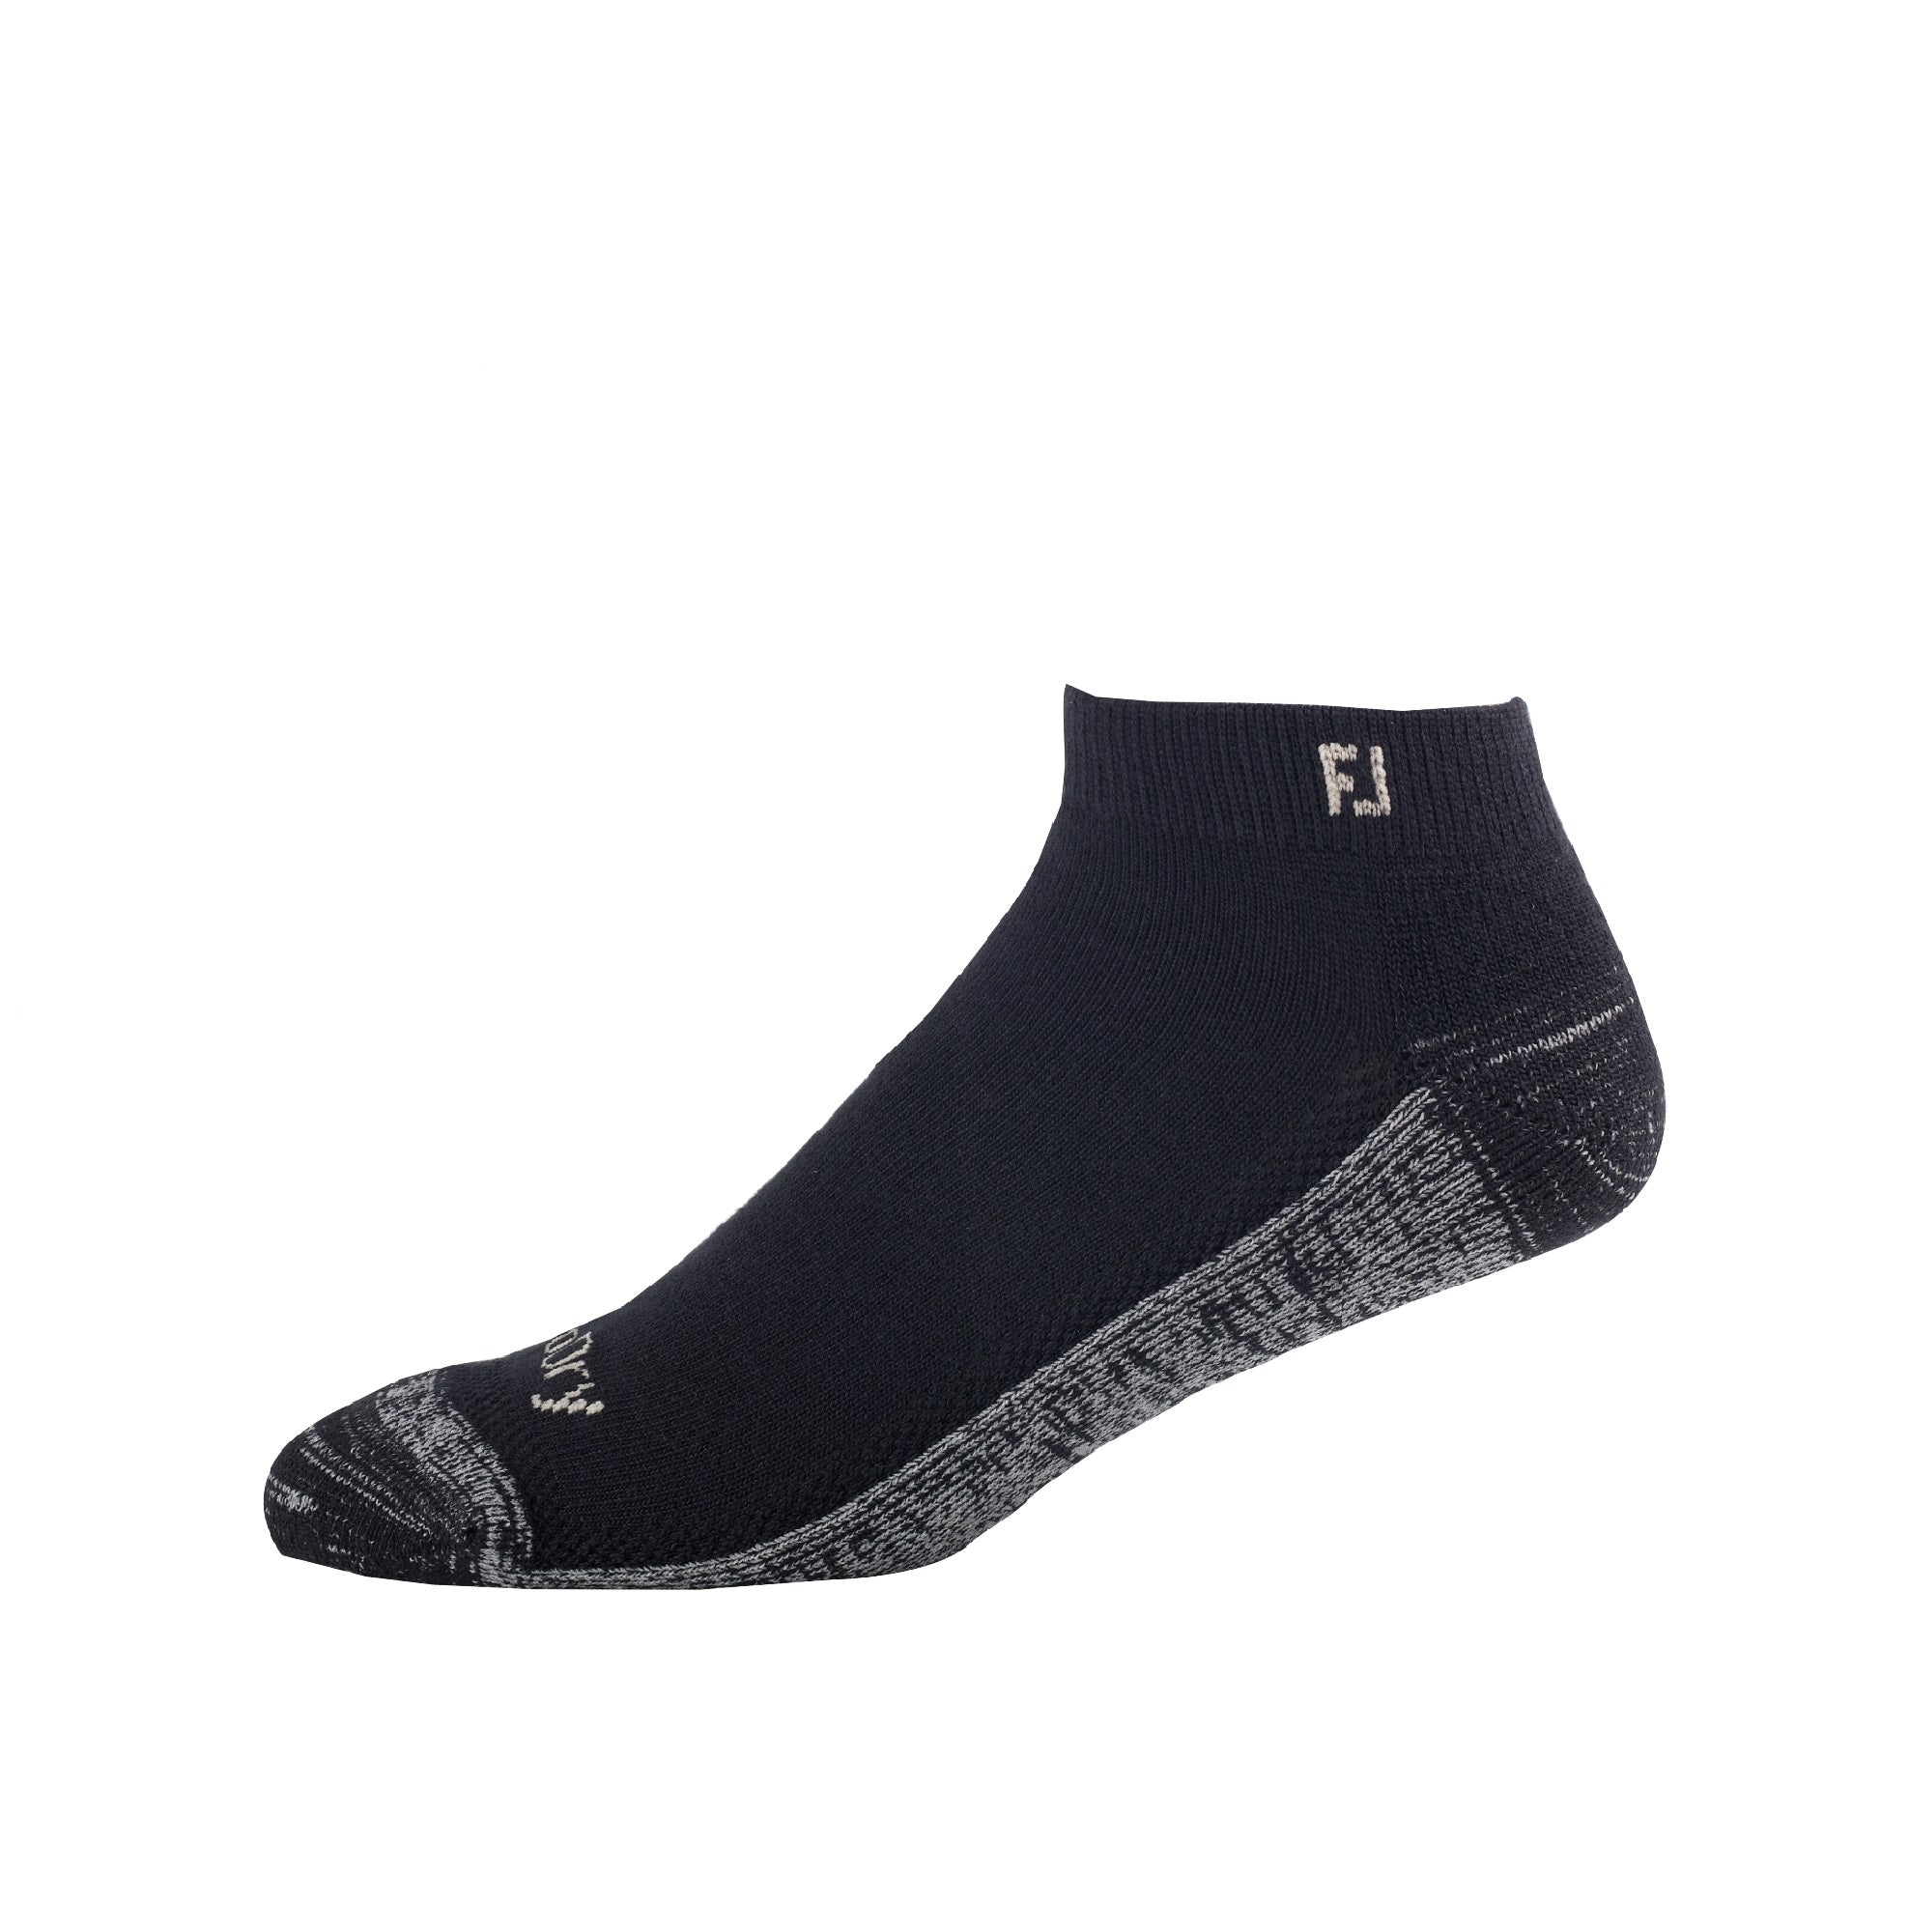 footjoy-prodry-sport-golf-socks-17032